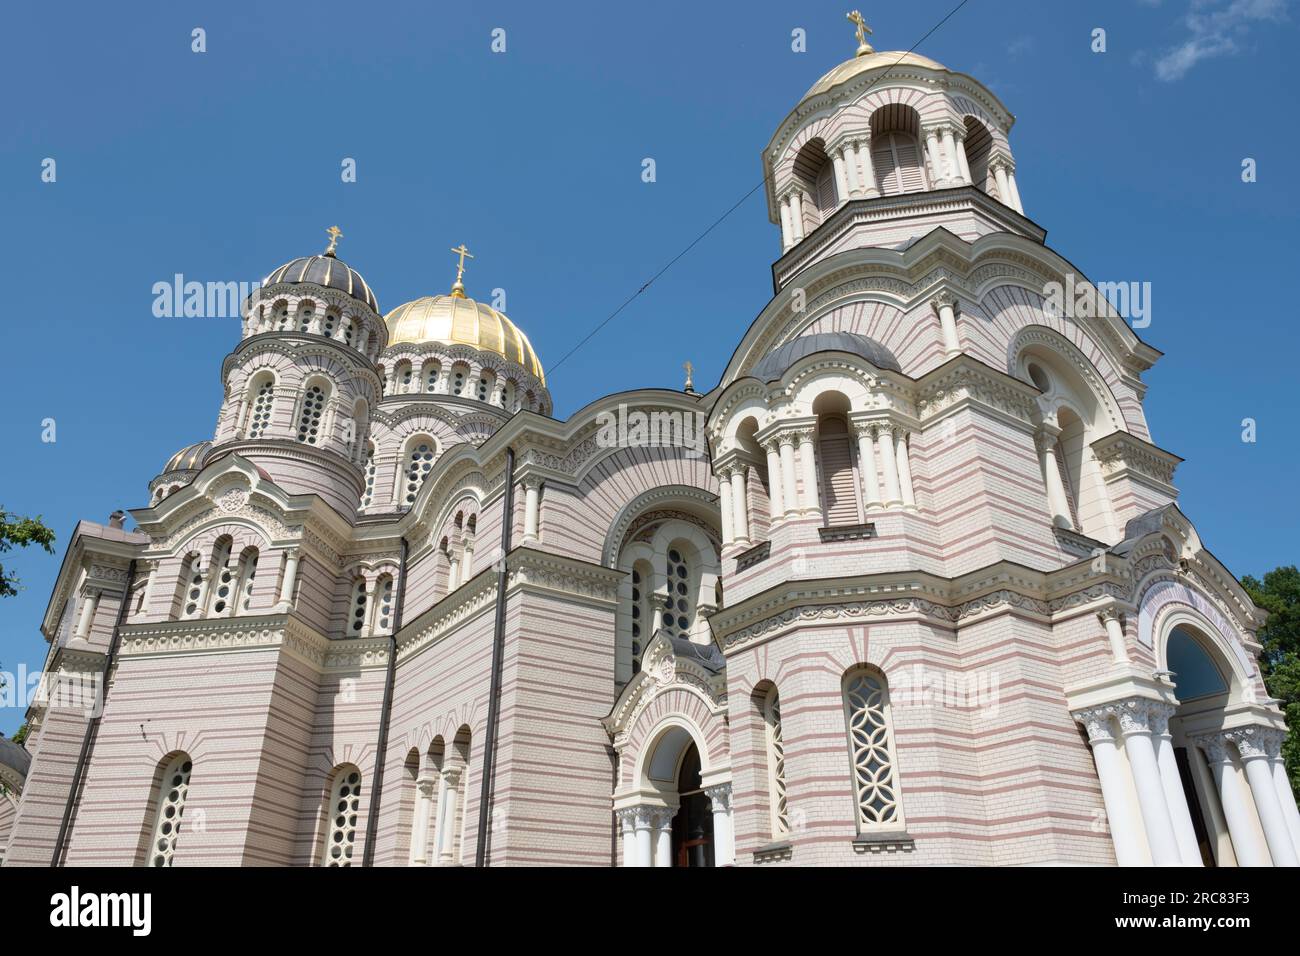 Cathédrale de la Nativité du Christ à Riga, la plus grande cathédrale orthodoxe de la région Baltique Banque D'Images